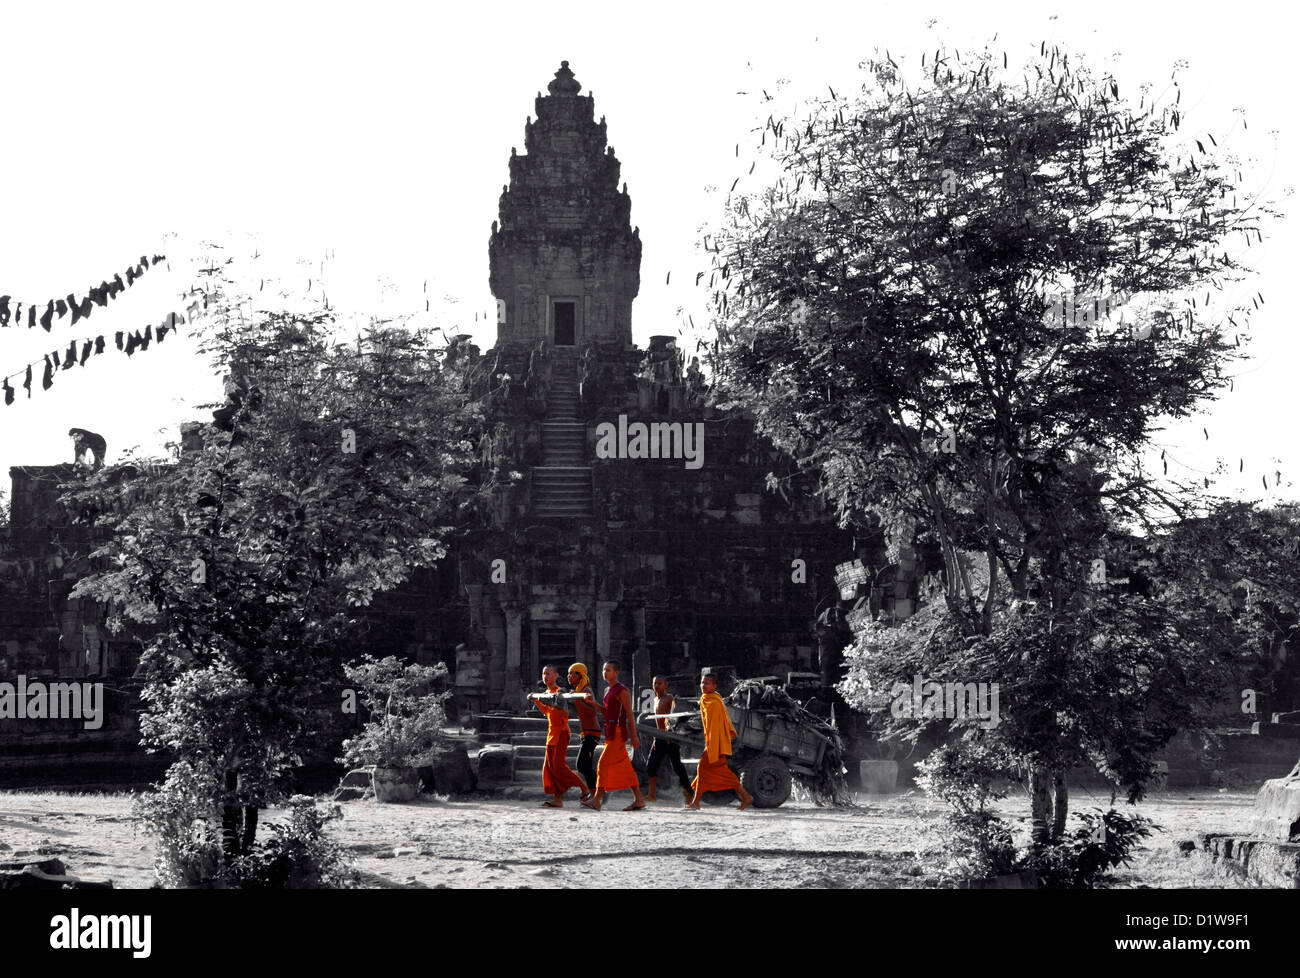 Les jeunes moines bouddhistes sont territoire de nettoyage du Temple Bakong au Cambodge Banque D'Images